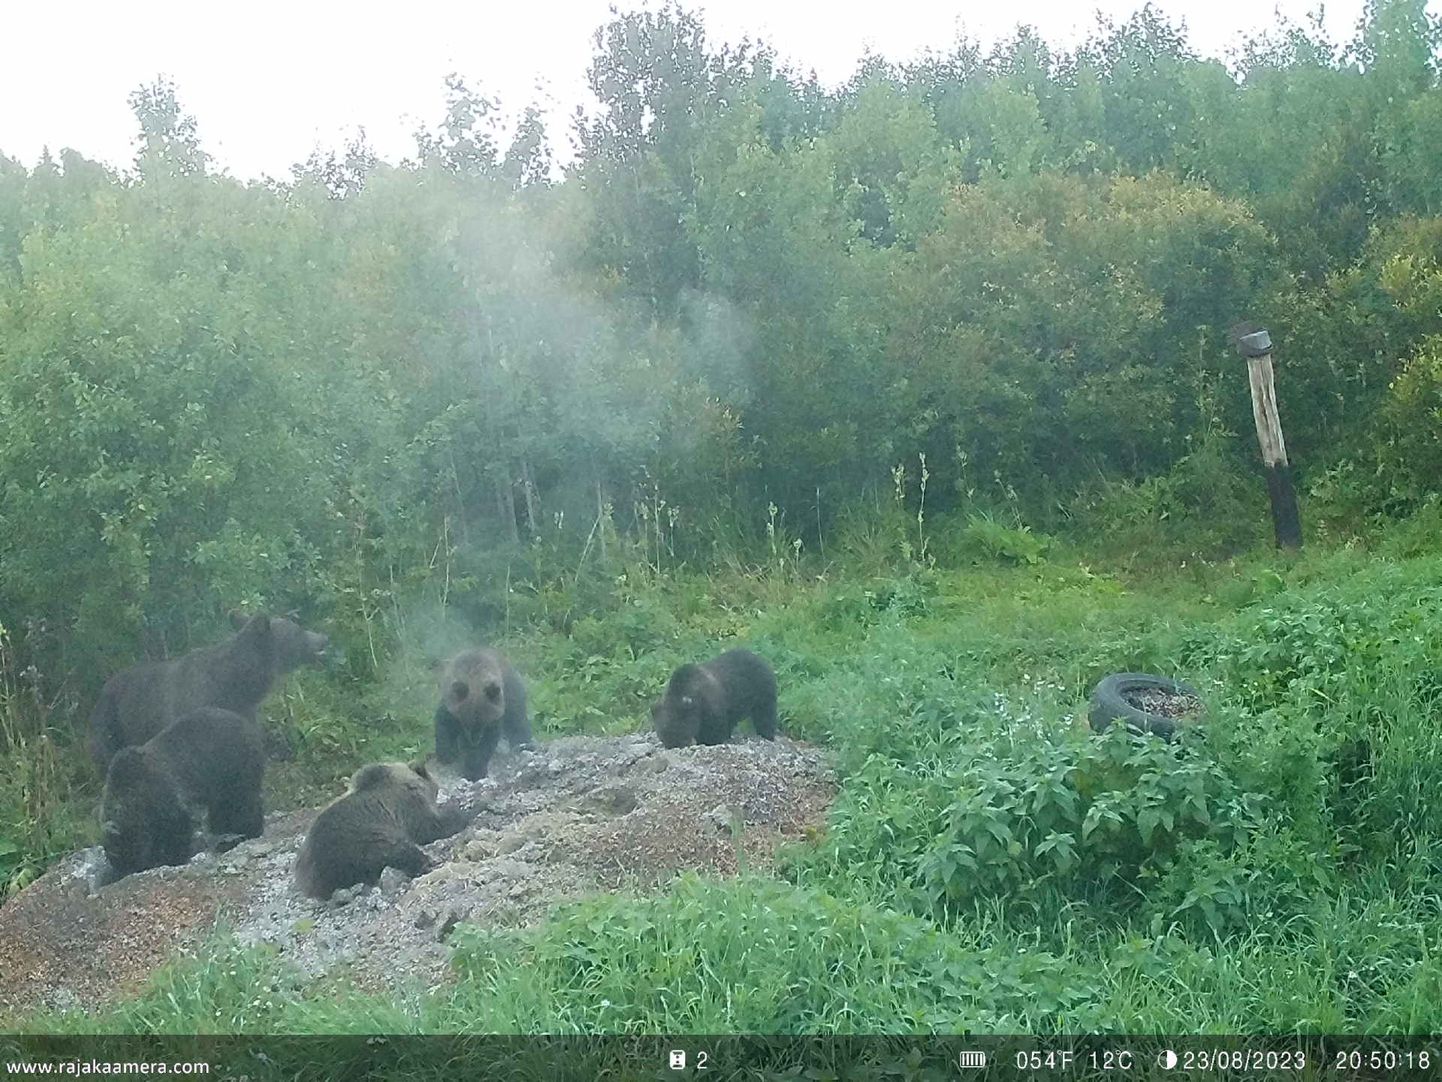 В среду вечером в деревне Рохе волости Йыгева на камеру попала медведица с четырьмя детенышами.